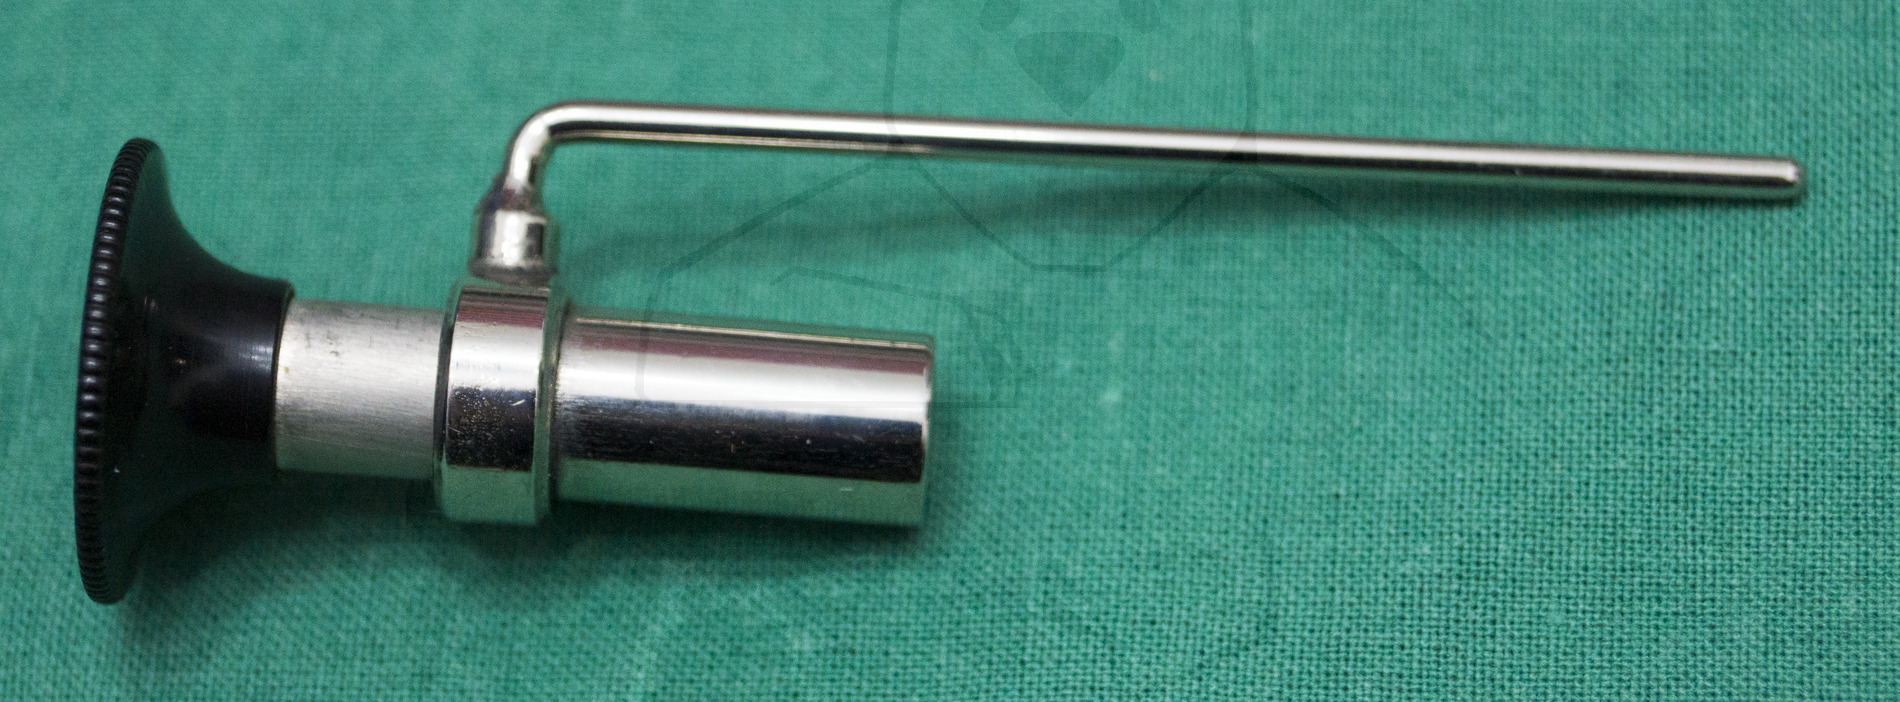 Laryngoskop - Die Komponenten der Optik - Okular und Halter zusammen gesetzt